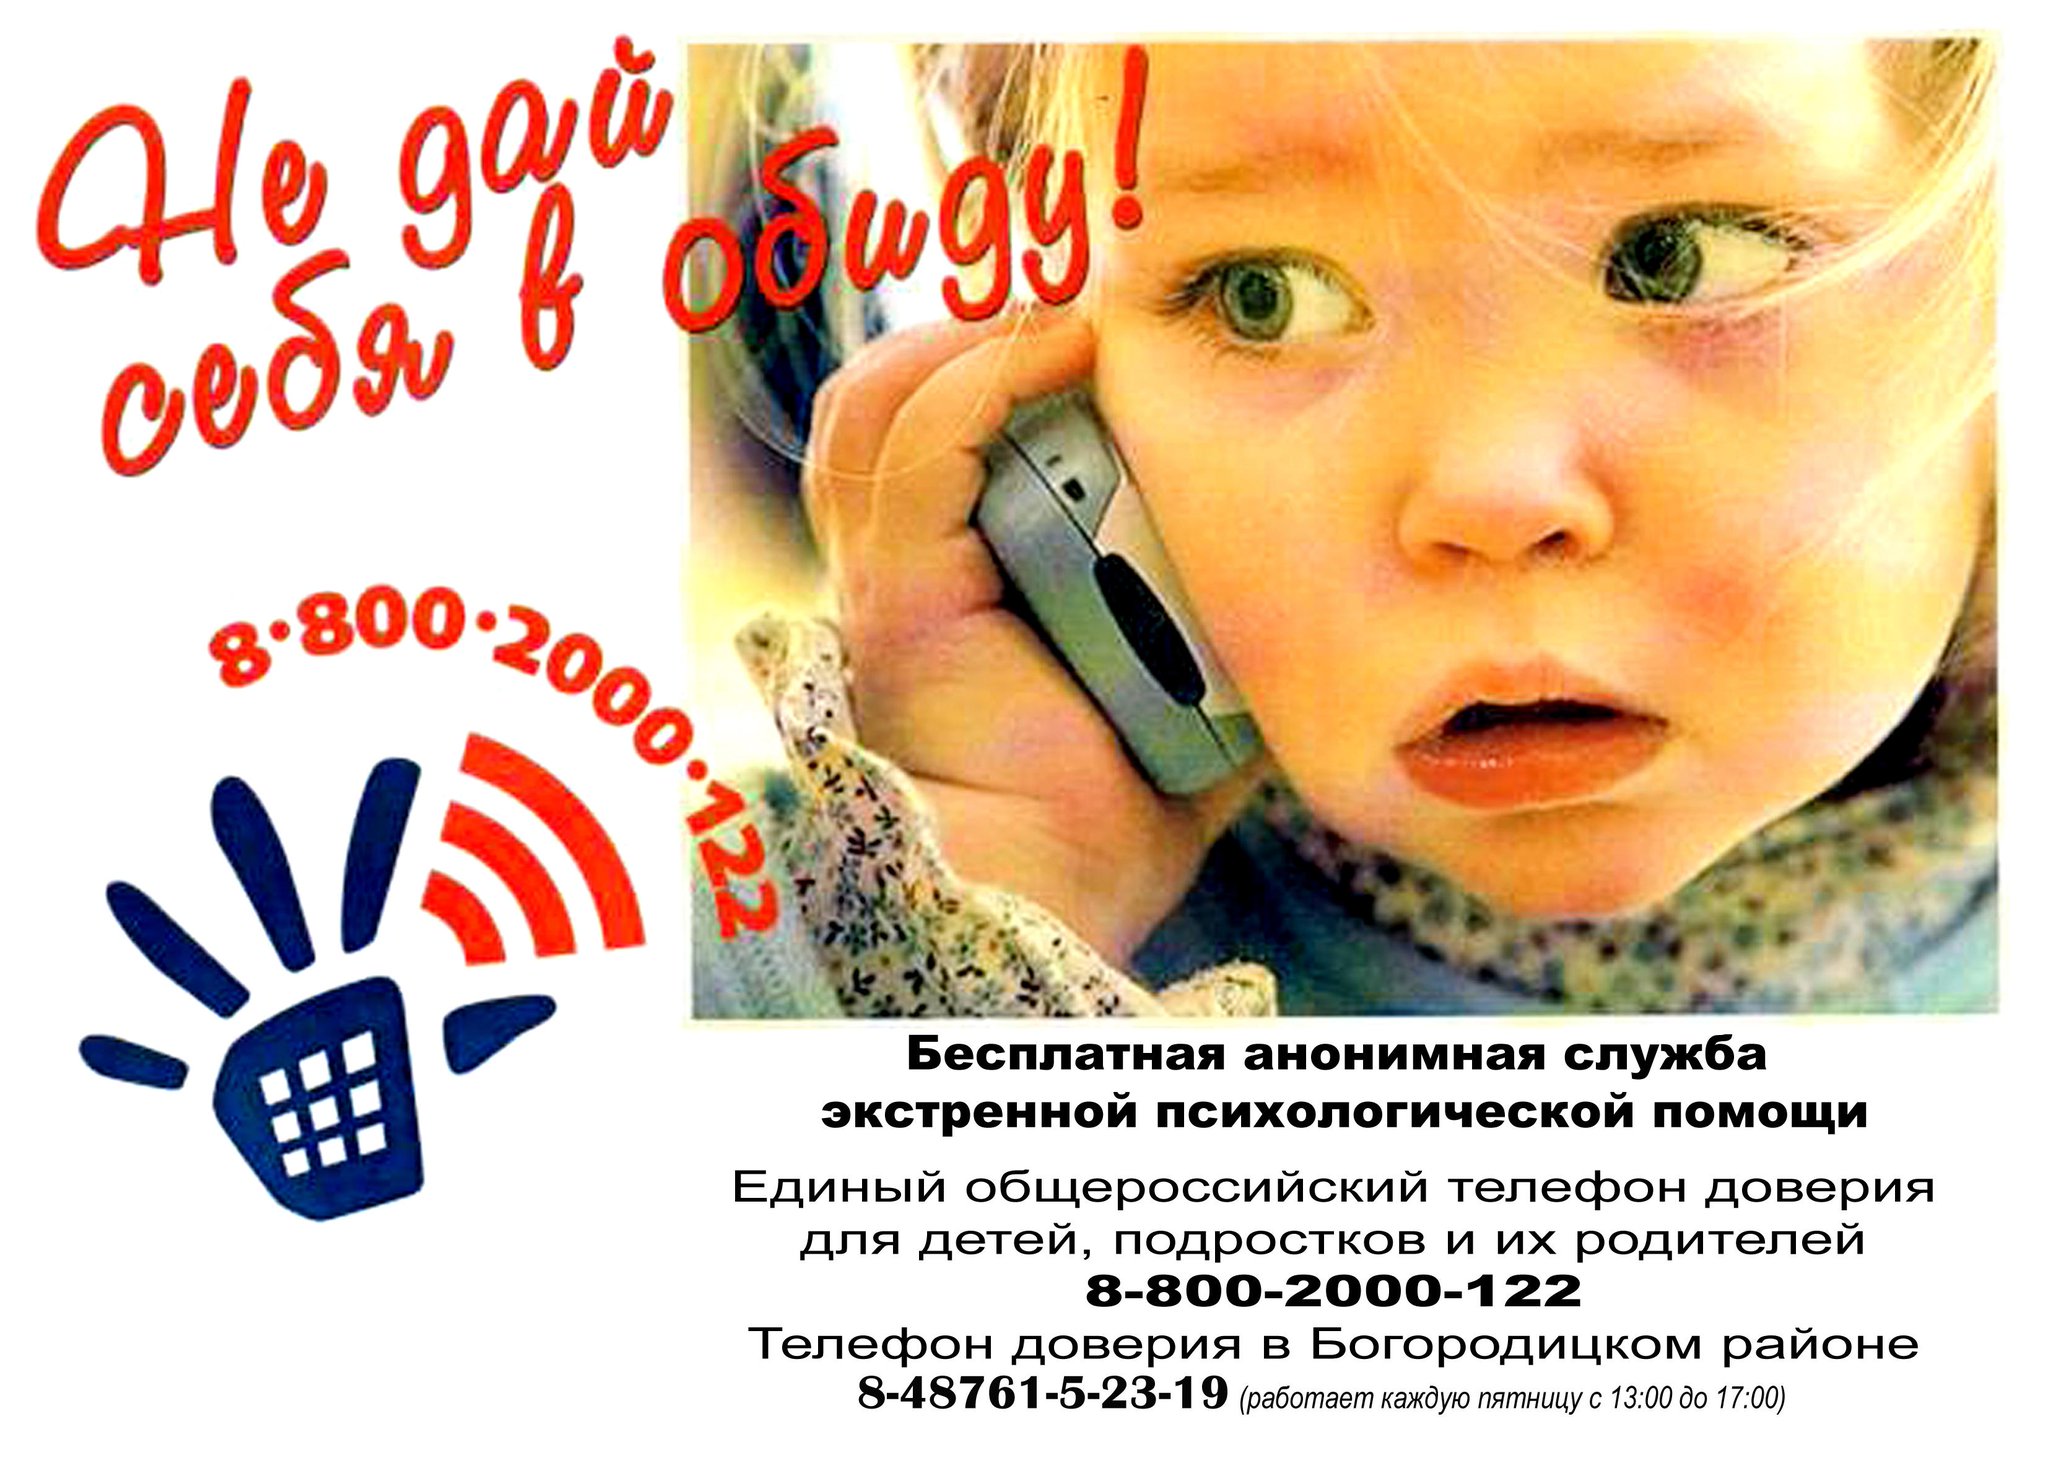 Платный телефон доверия. Единый детский телефон доверия 8-800-2000-122. Телефон доверия. Телефон доверия для детей. Детские телефоны доверия.